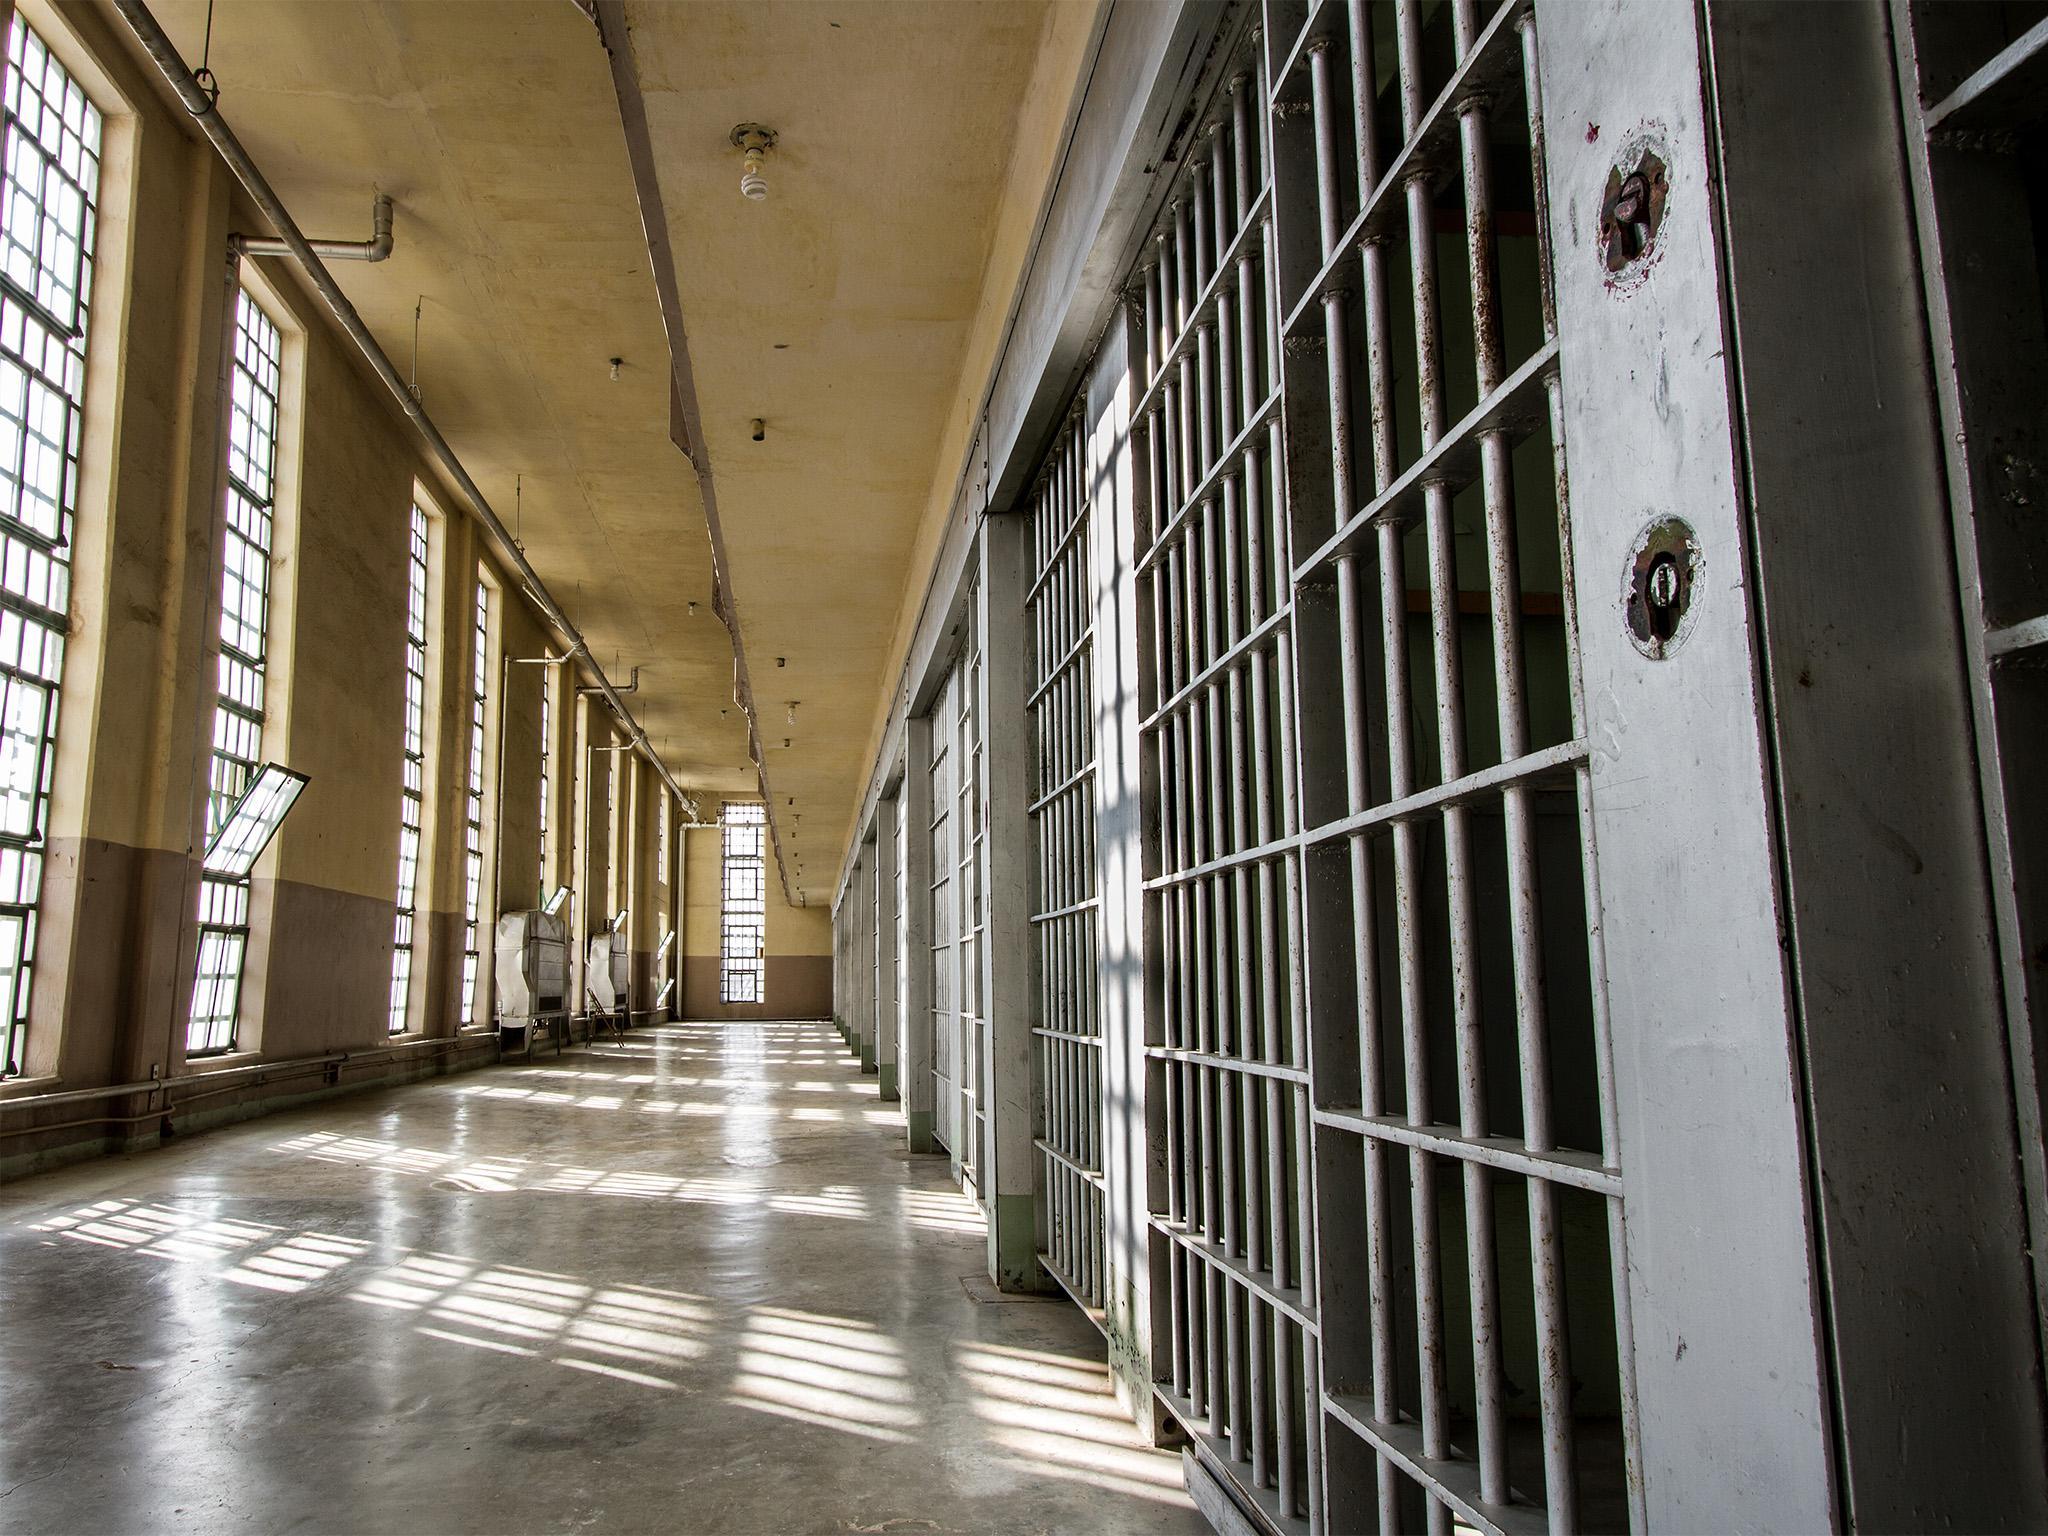 Աբովյանի բանտում գտնվող  կալանավորներից մեկի 15-ամյա դուստրը փորձել է վերջ տալ կյանքին